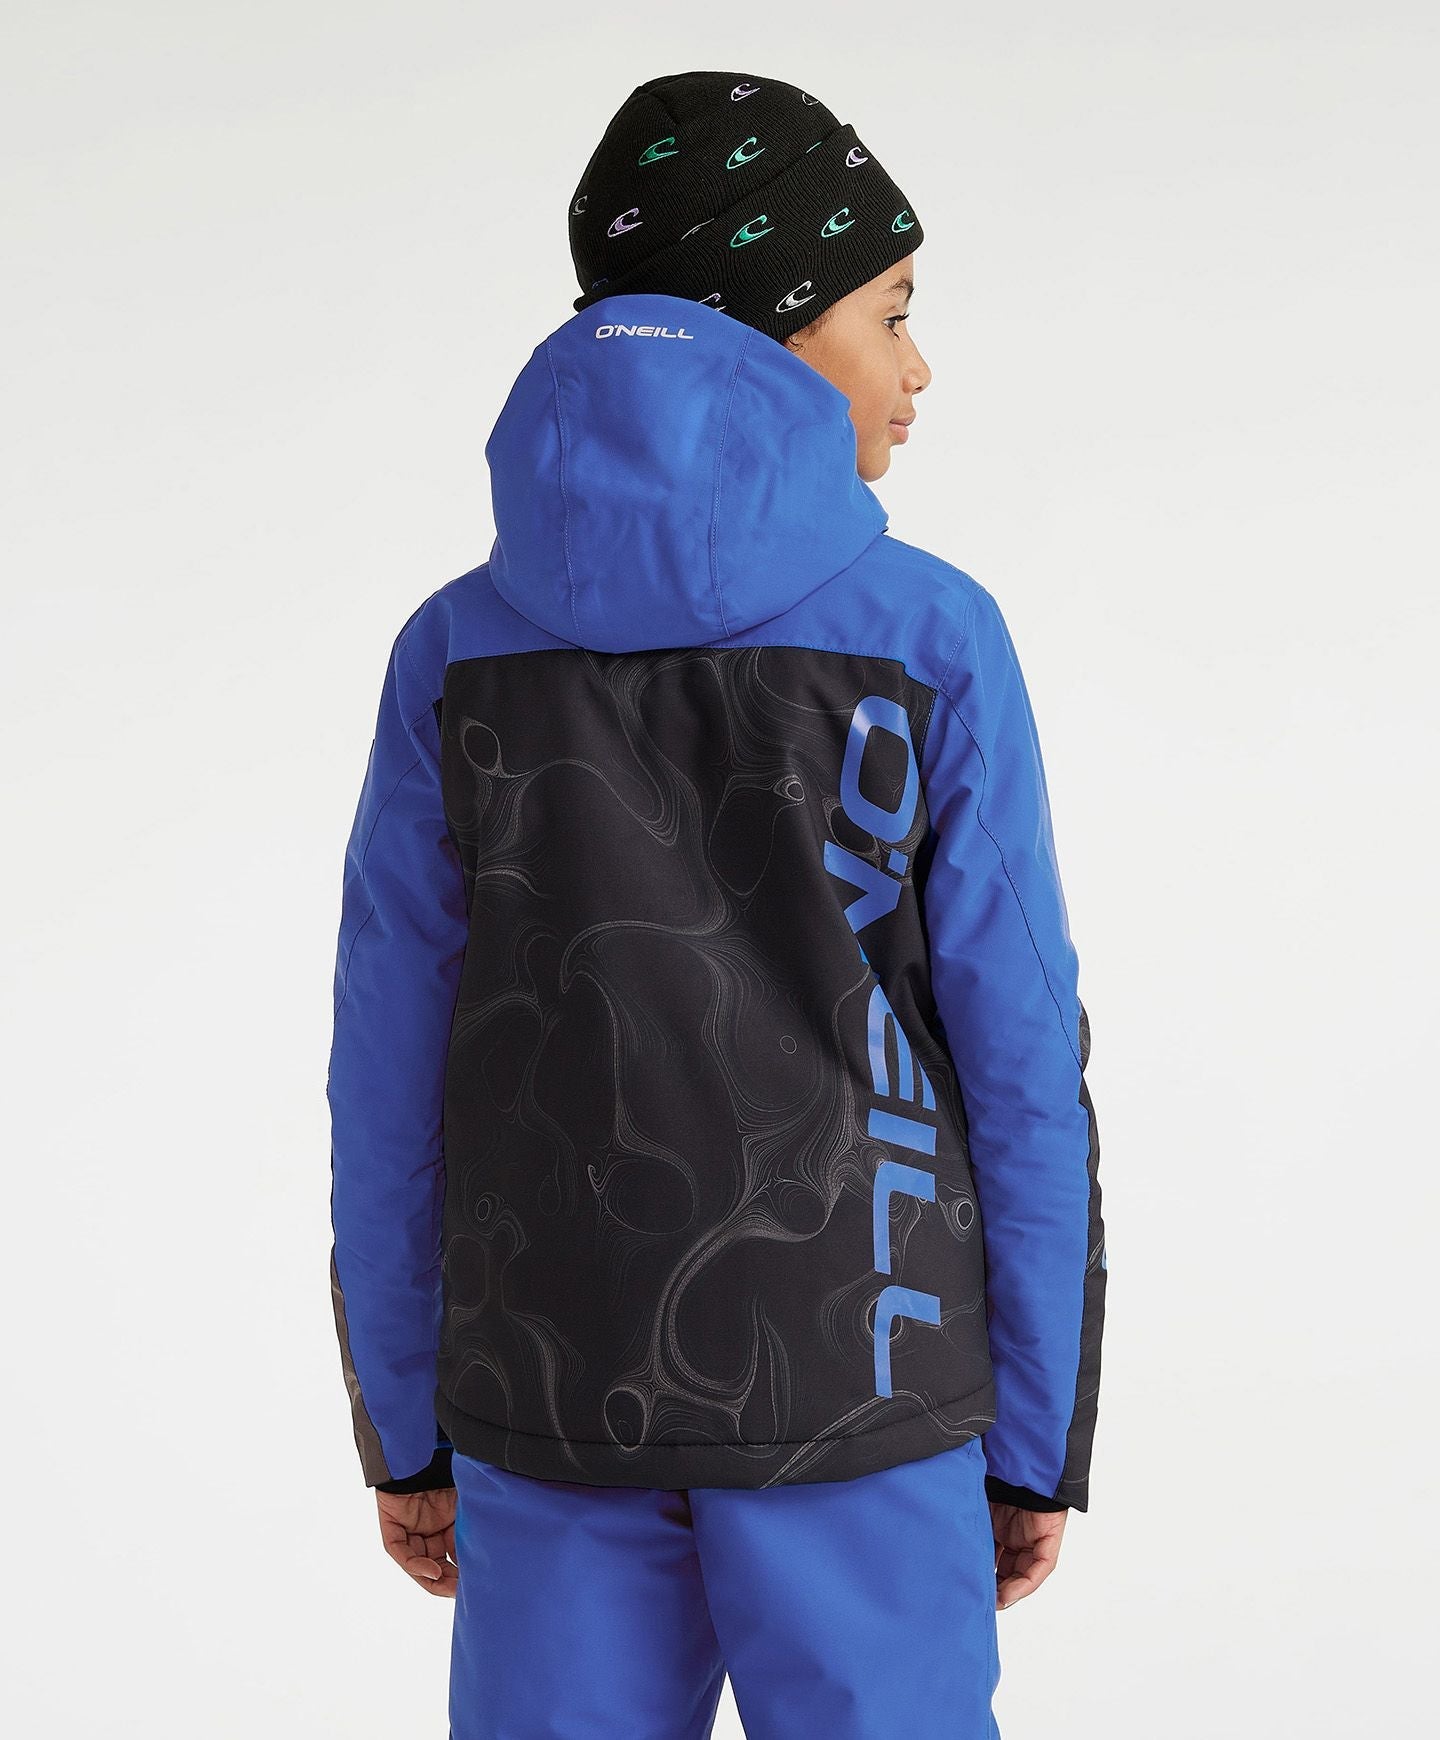 Boy's Texture Snow Jacket - Black Coding